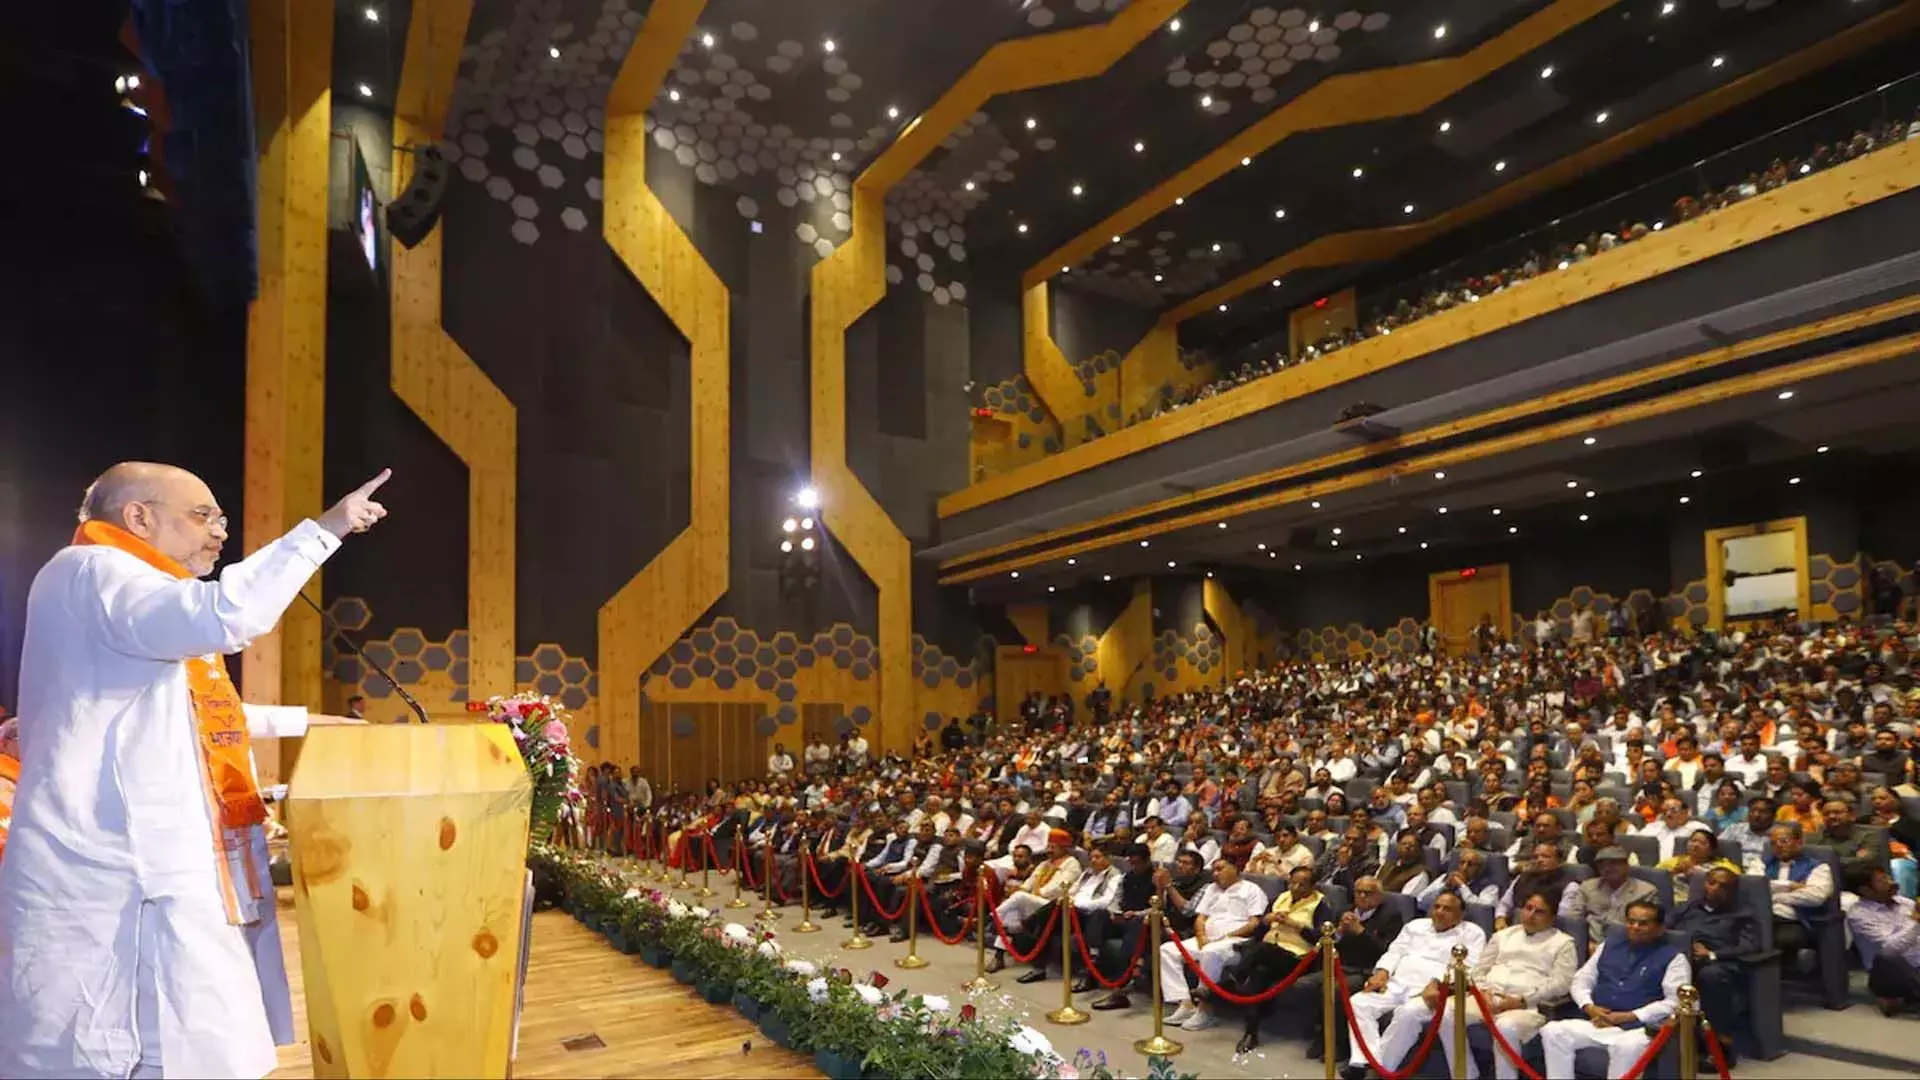 पीएम मोदी ने 2047 तक भारत को विकसित देश बनाने का संकल्प लिया: अमित शाह